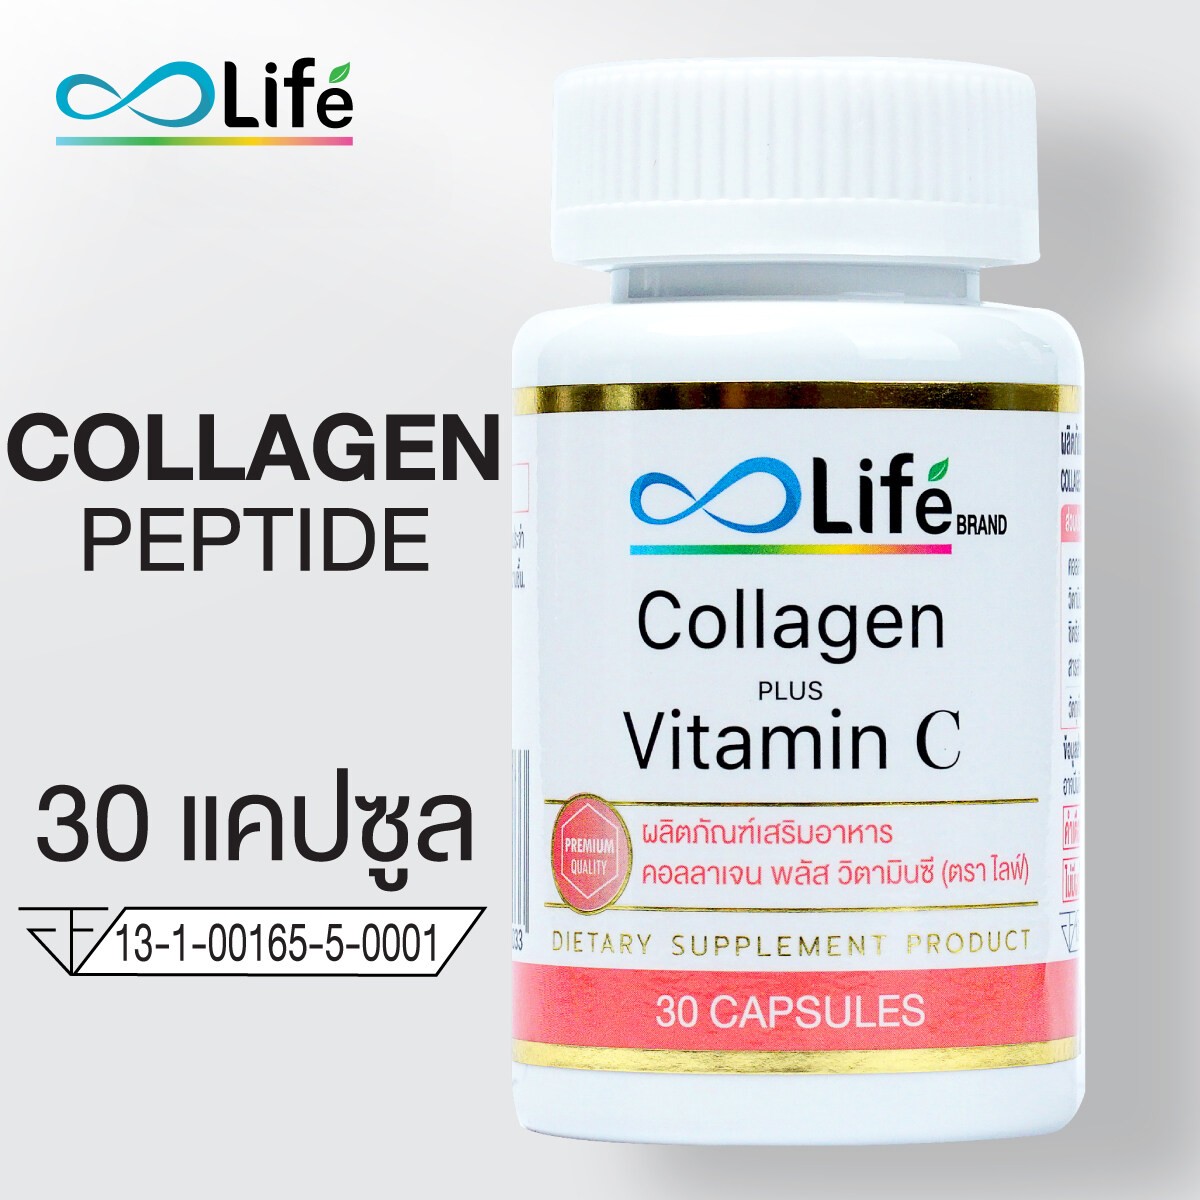 รูปภาพที่2 ของสินค้า : ไลฟ์ คอลลาเจน พลัส วิตามินซี Life Collagen Plus Vitaminc 1 กระปุก  LCOL1-A